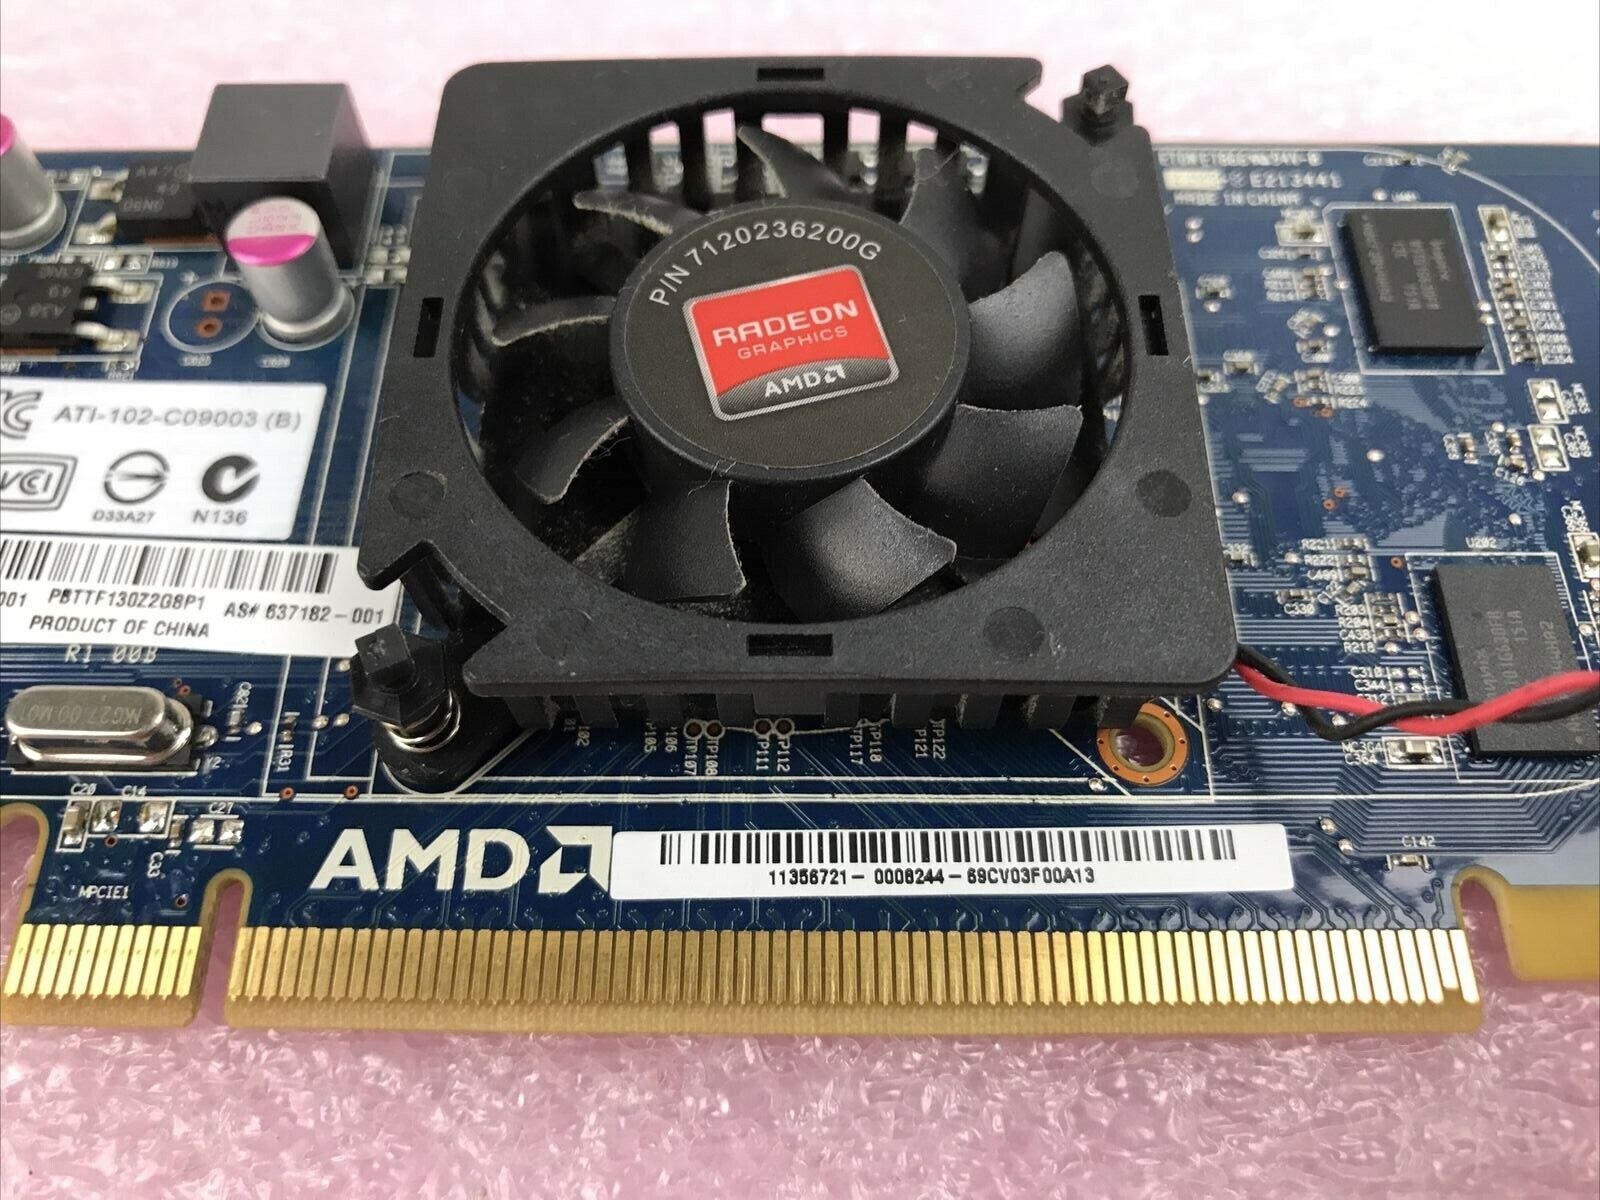 AMD Radeon ATI-102-C09003 (B) 512MB  PCI Express Video Card Low Profile